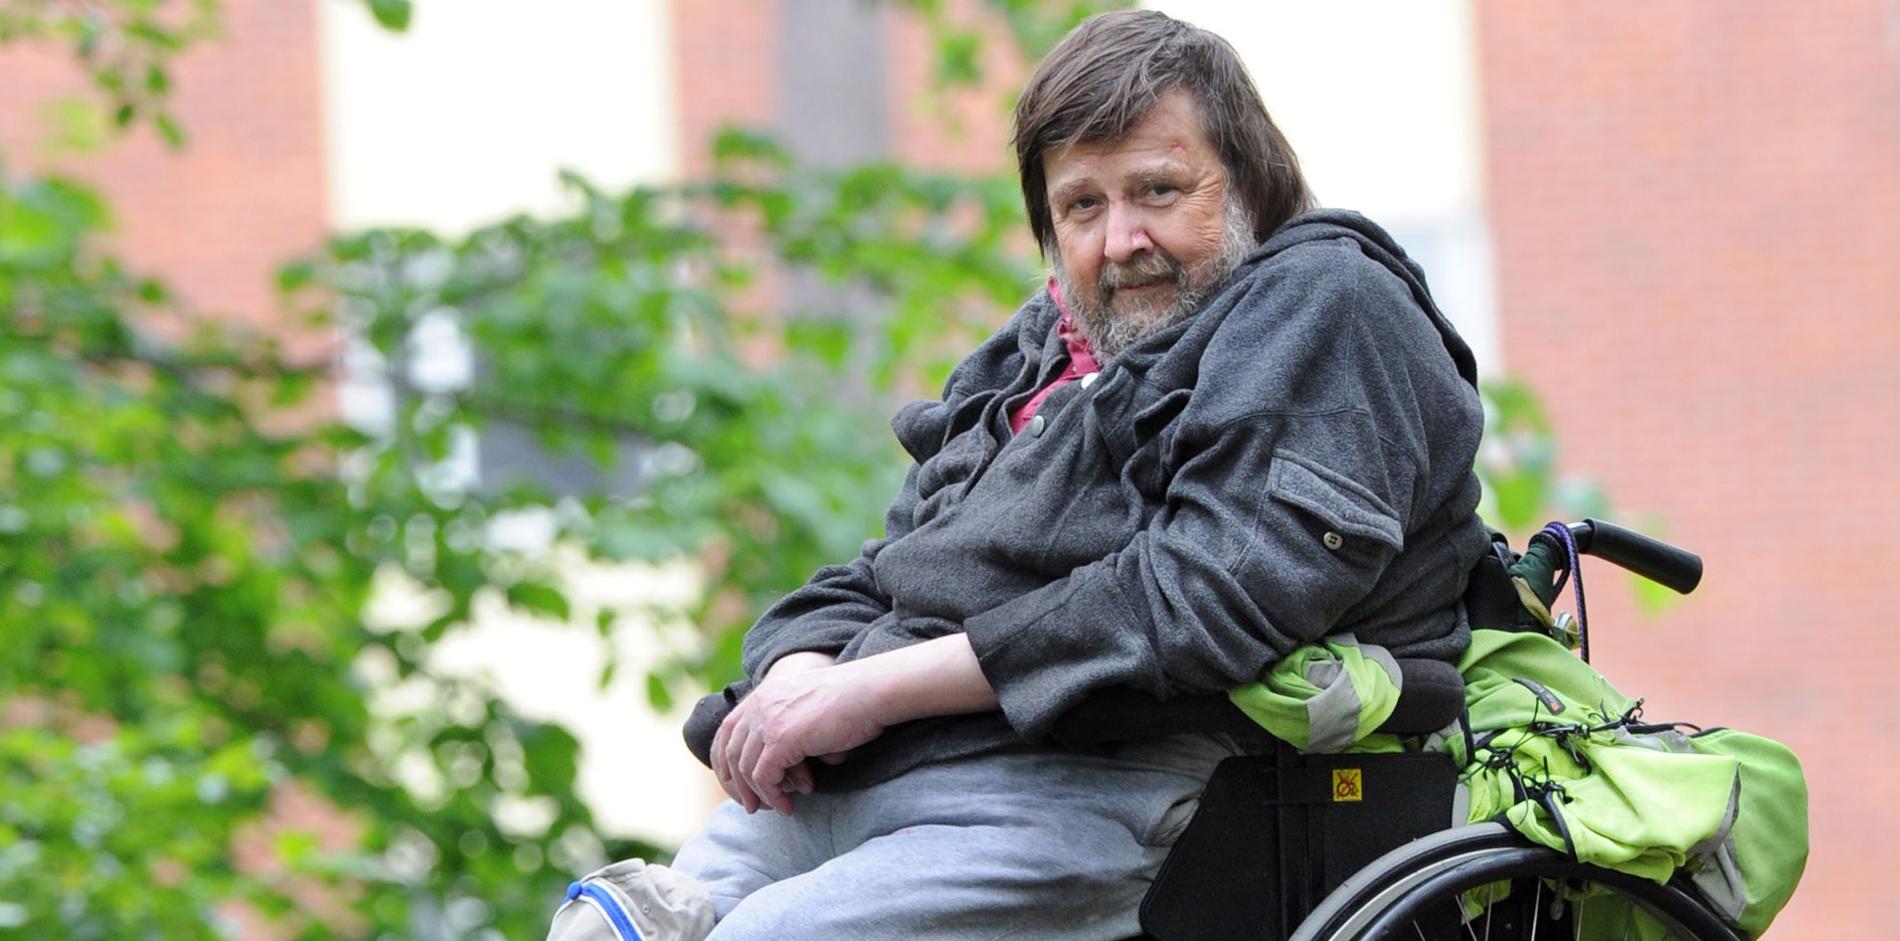 FICK INGEN HJÄLP. Göran Björndahl ramlade ur rullstolen och ringde 112. Där fick han beskedet att han skulle använda sitt trygghetslarm – som låg hemma.